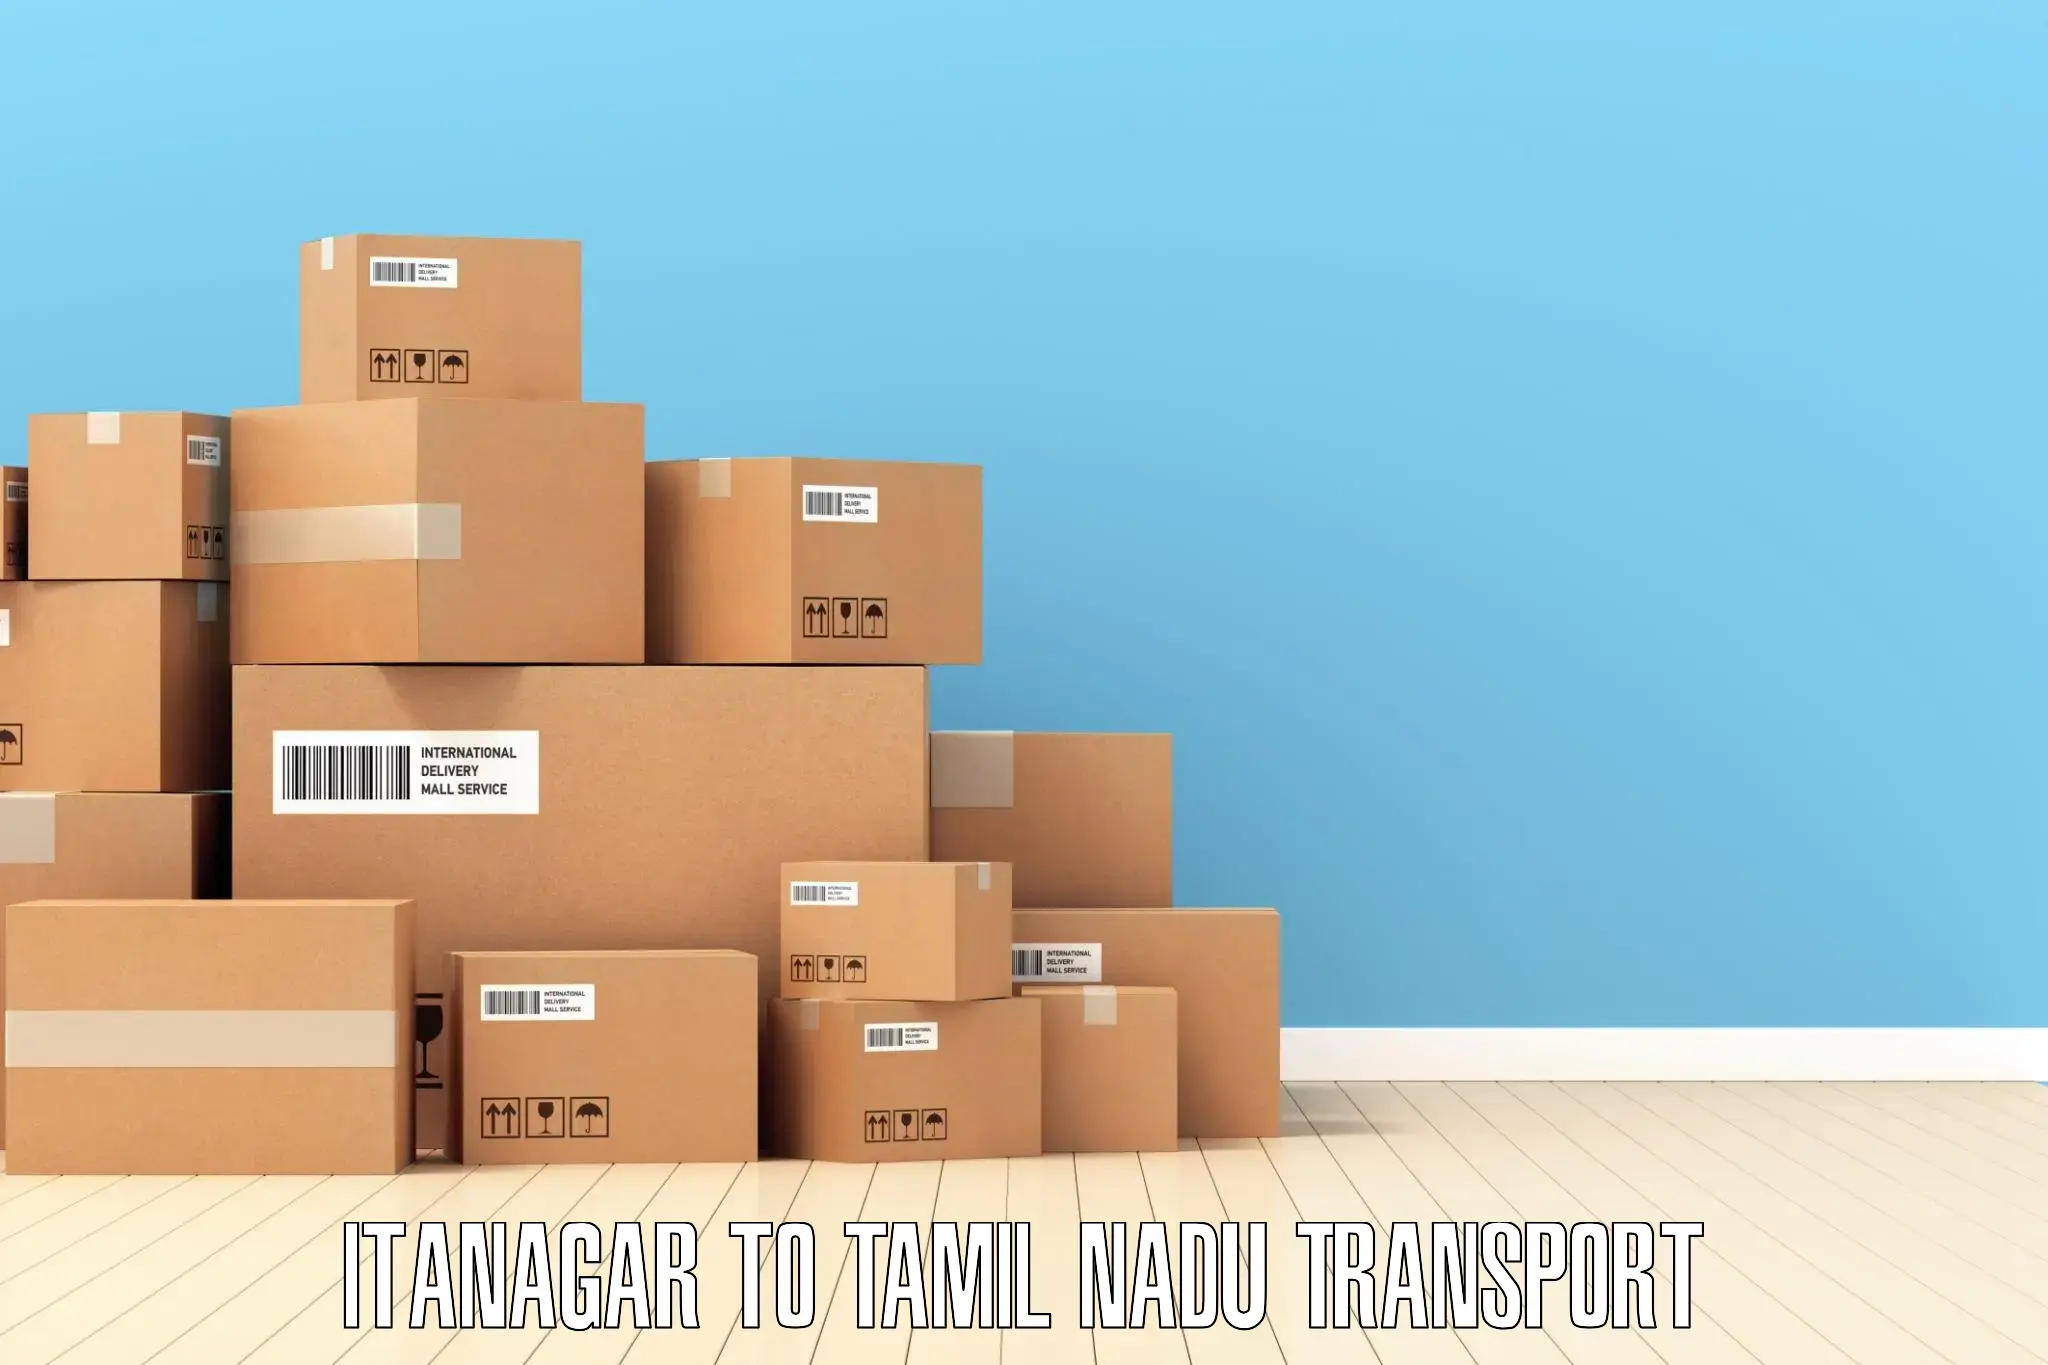 Shipping partner Itanagar to Tamil Nadu